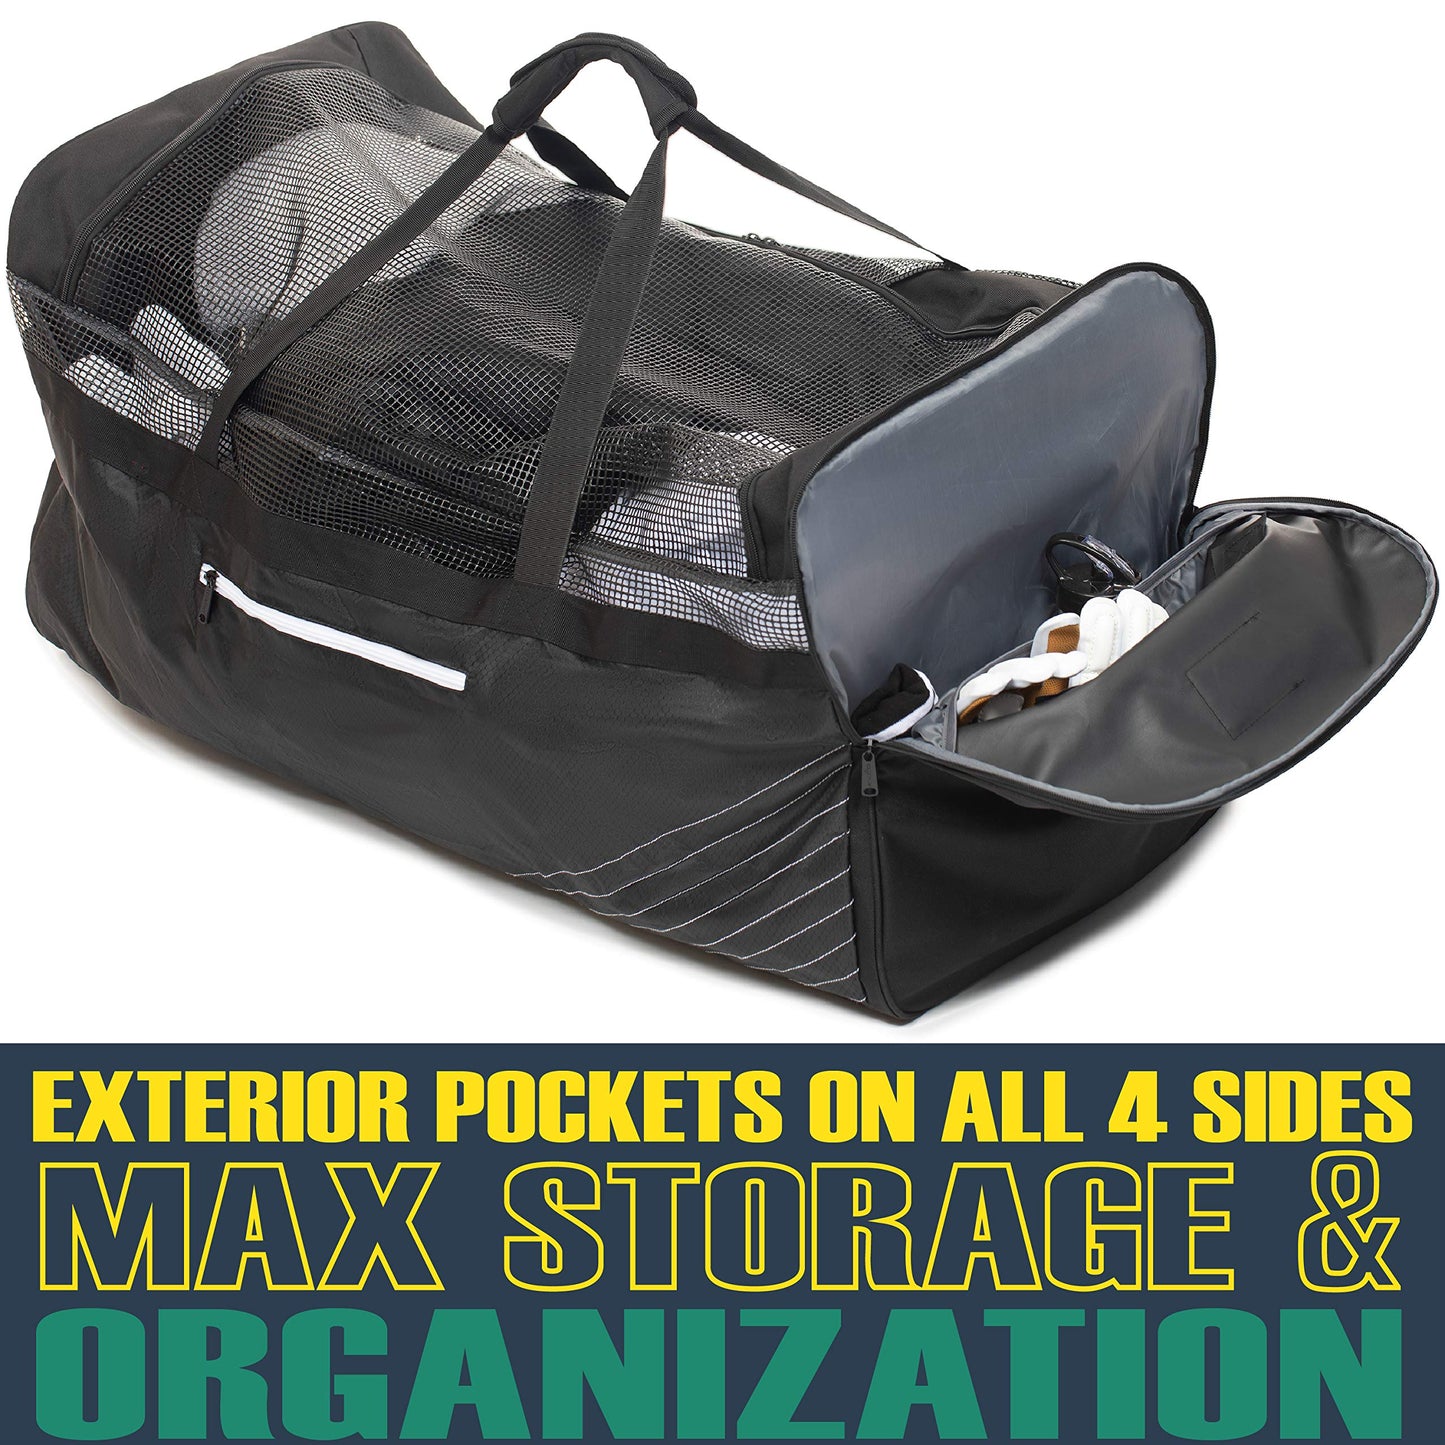 Athletico Hockey Duffle Bag - 35" Large Ice Hockey Duffel XXL Travel Bag for Equipment & Gear, with Included Organizer Caddy (Back)